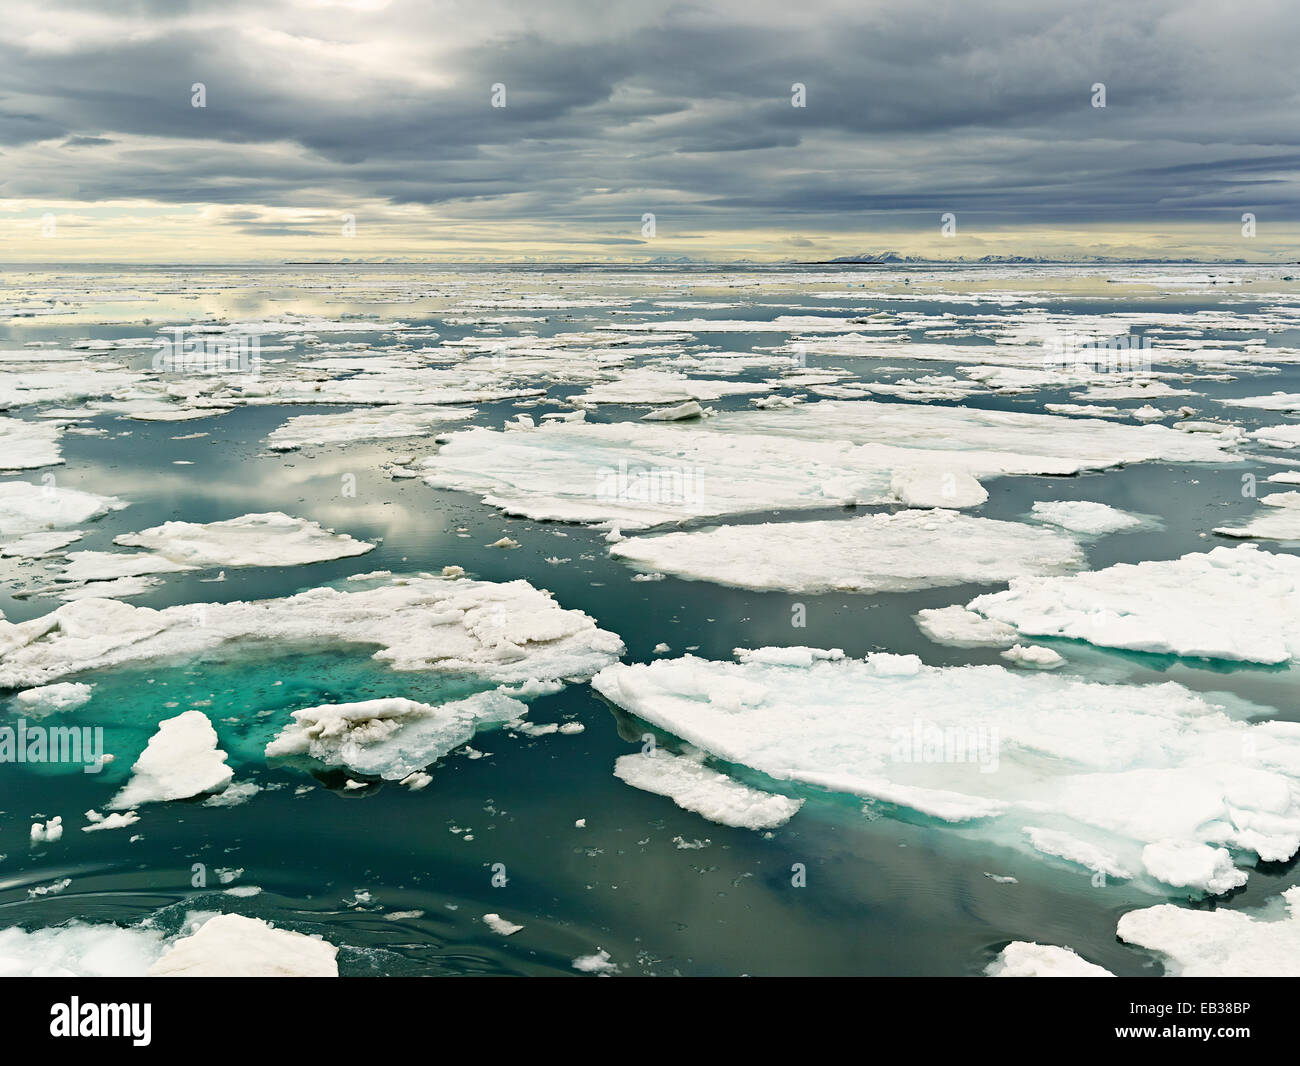 Pacco di fusione del ghiaccio, isola Spitsbergen, arcipelago delle Svalbard Isole Svalbard e Jan Mayen, Norvegia Foto Stock